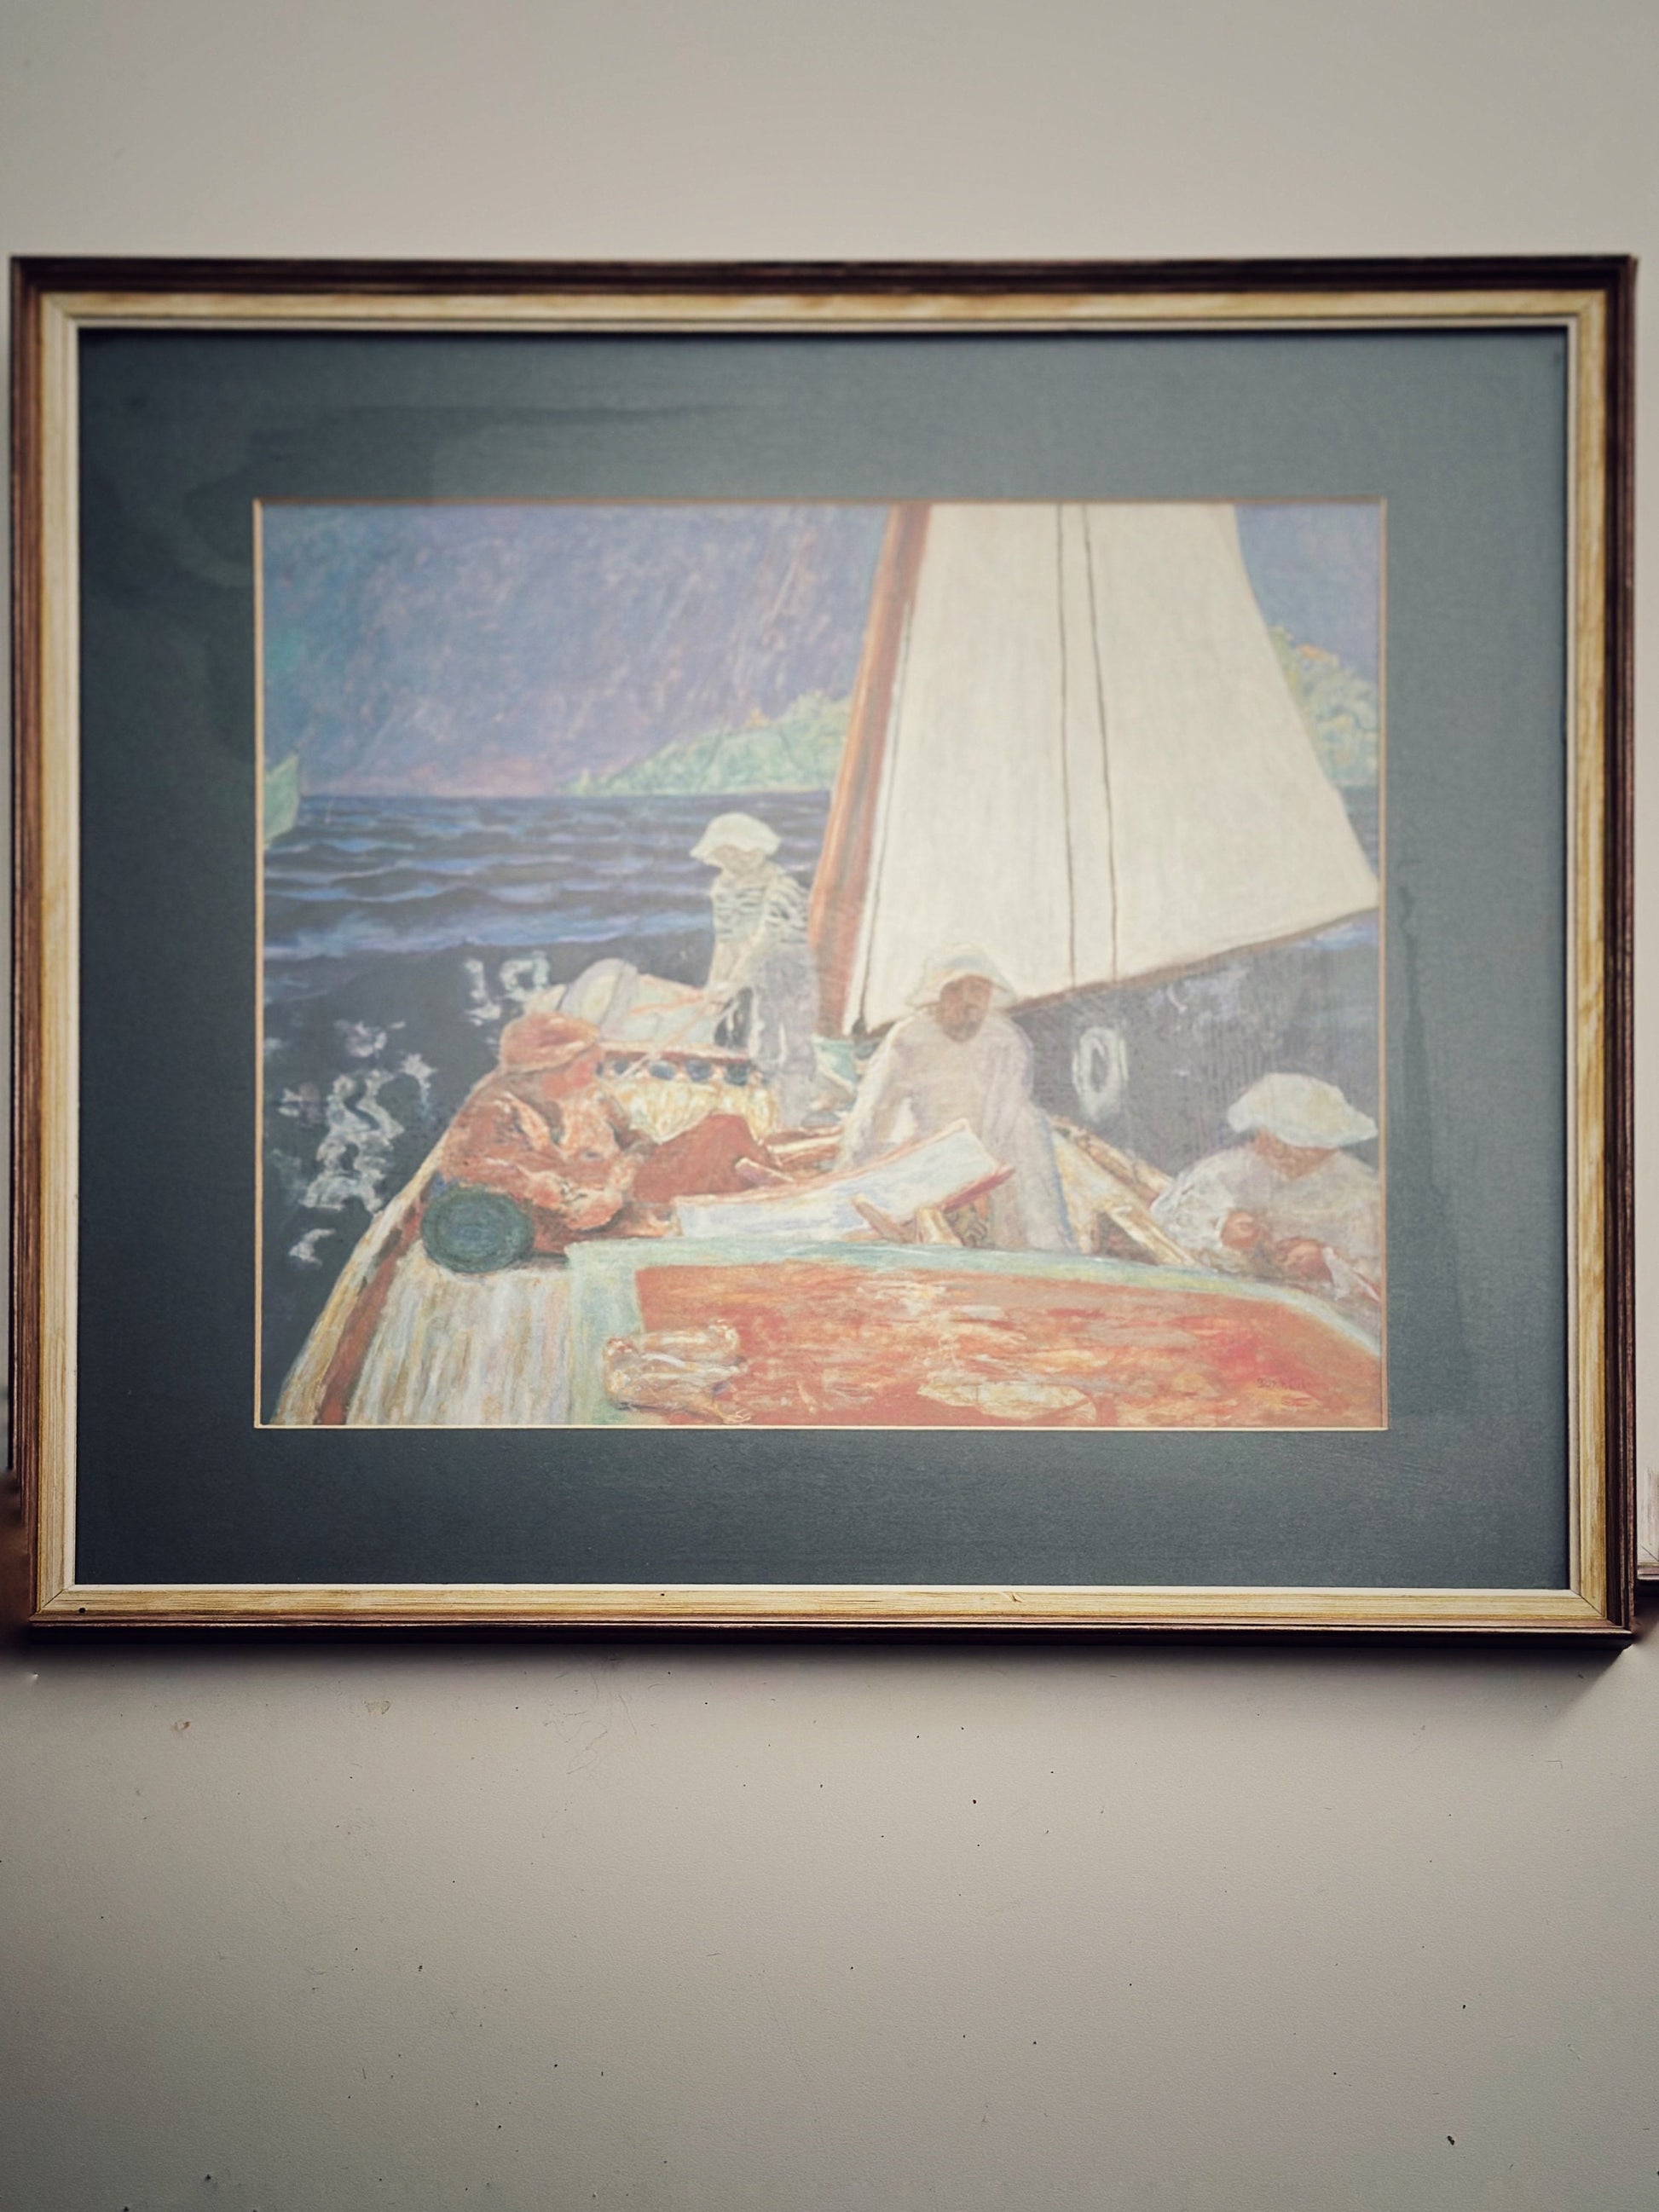 Signac et ses amis dans un voilier (Signac and his friends in a sailboat) by Pierre Bonnard